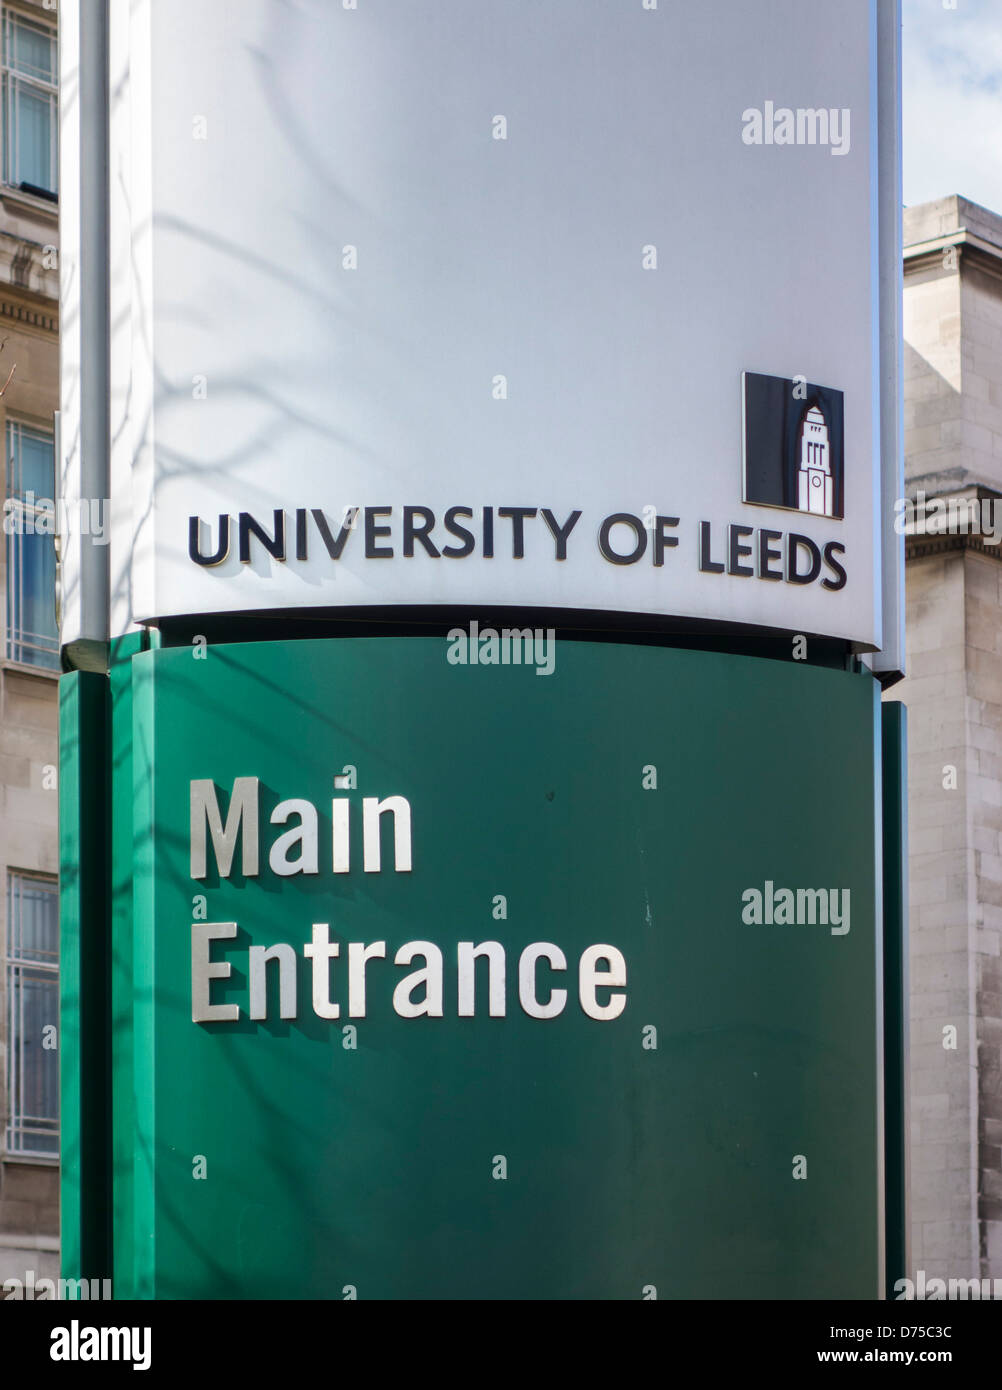 Affiche à l'extérieur de l'entrée principale de la campus de l'Université de Leeds, Leeds, West Yorkshire, Royaume-Uni Banque D'Images